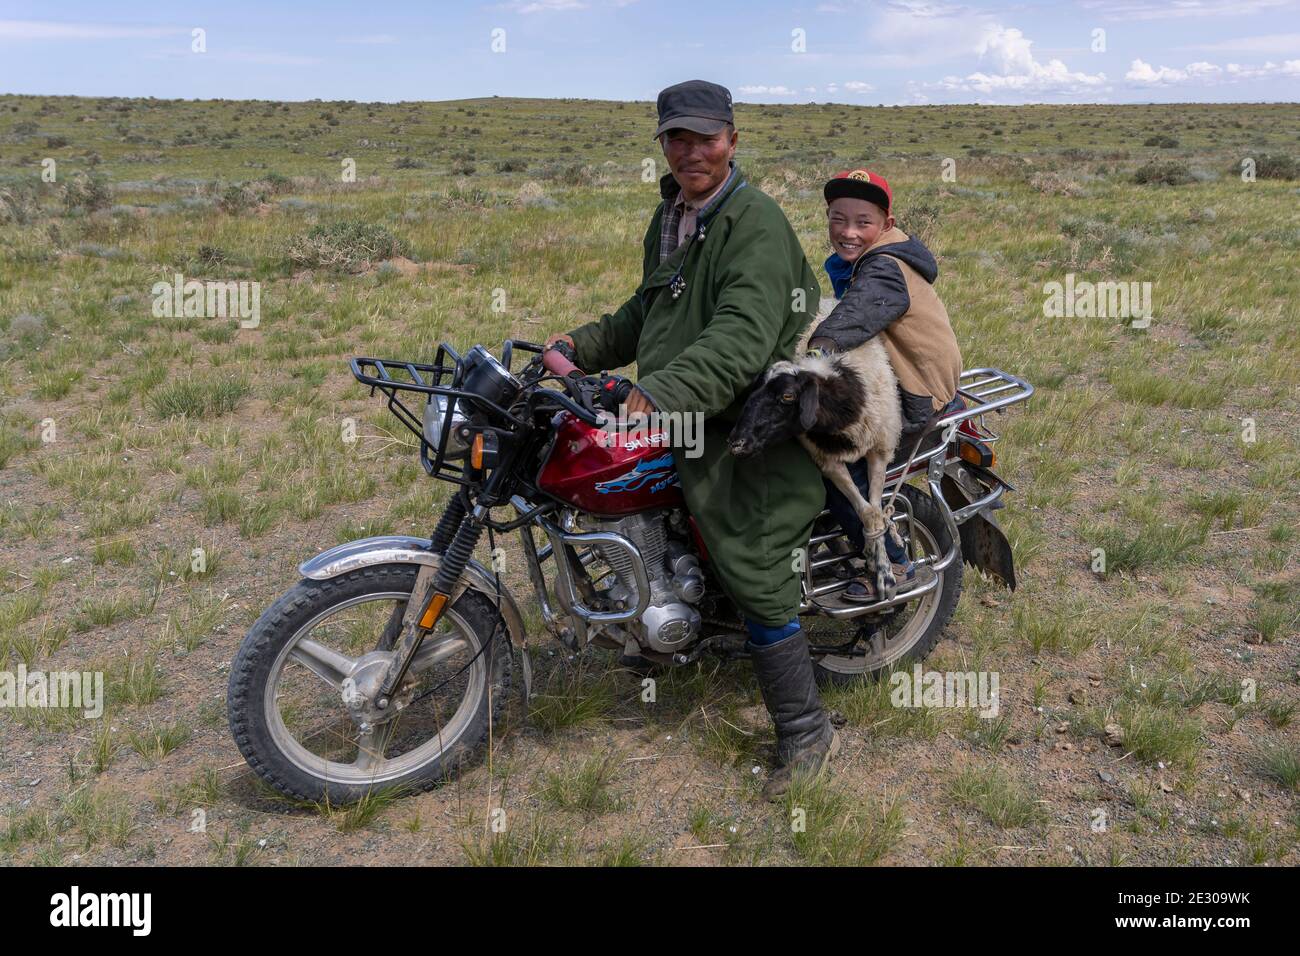 Olgii, Mongolia - 7 de agosto de 2019: Hombre mongol en una moto con el niño y las ovejas en la estepa de Mongolia cerca de Olgii. Foto de stock